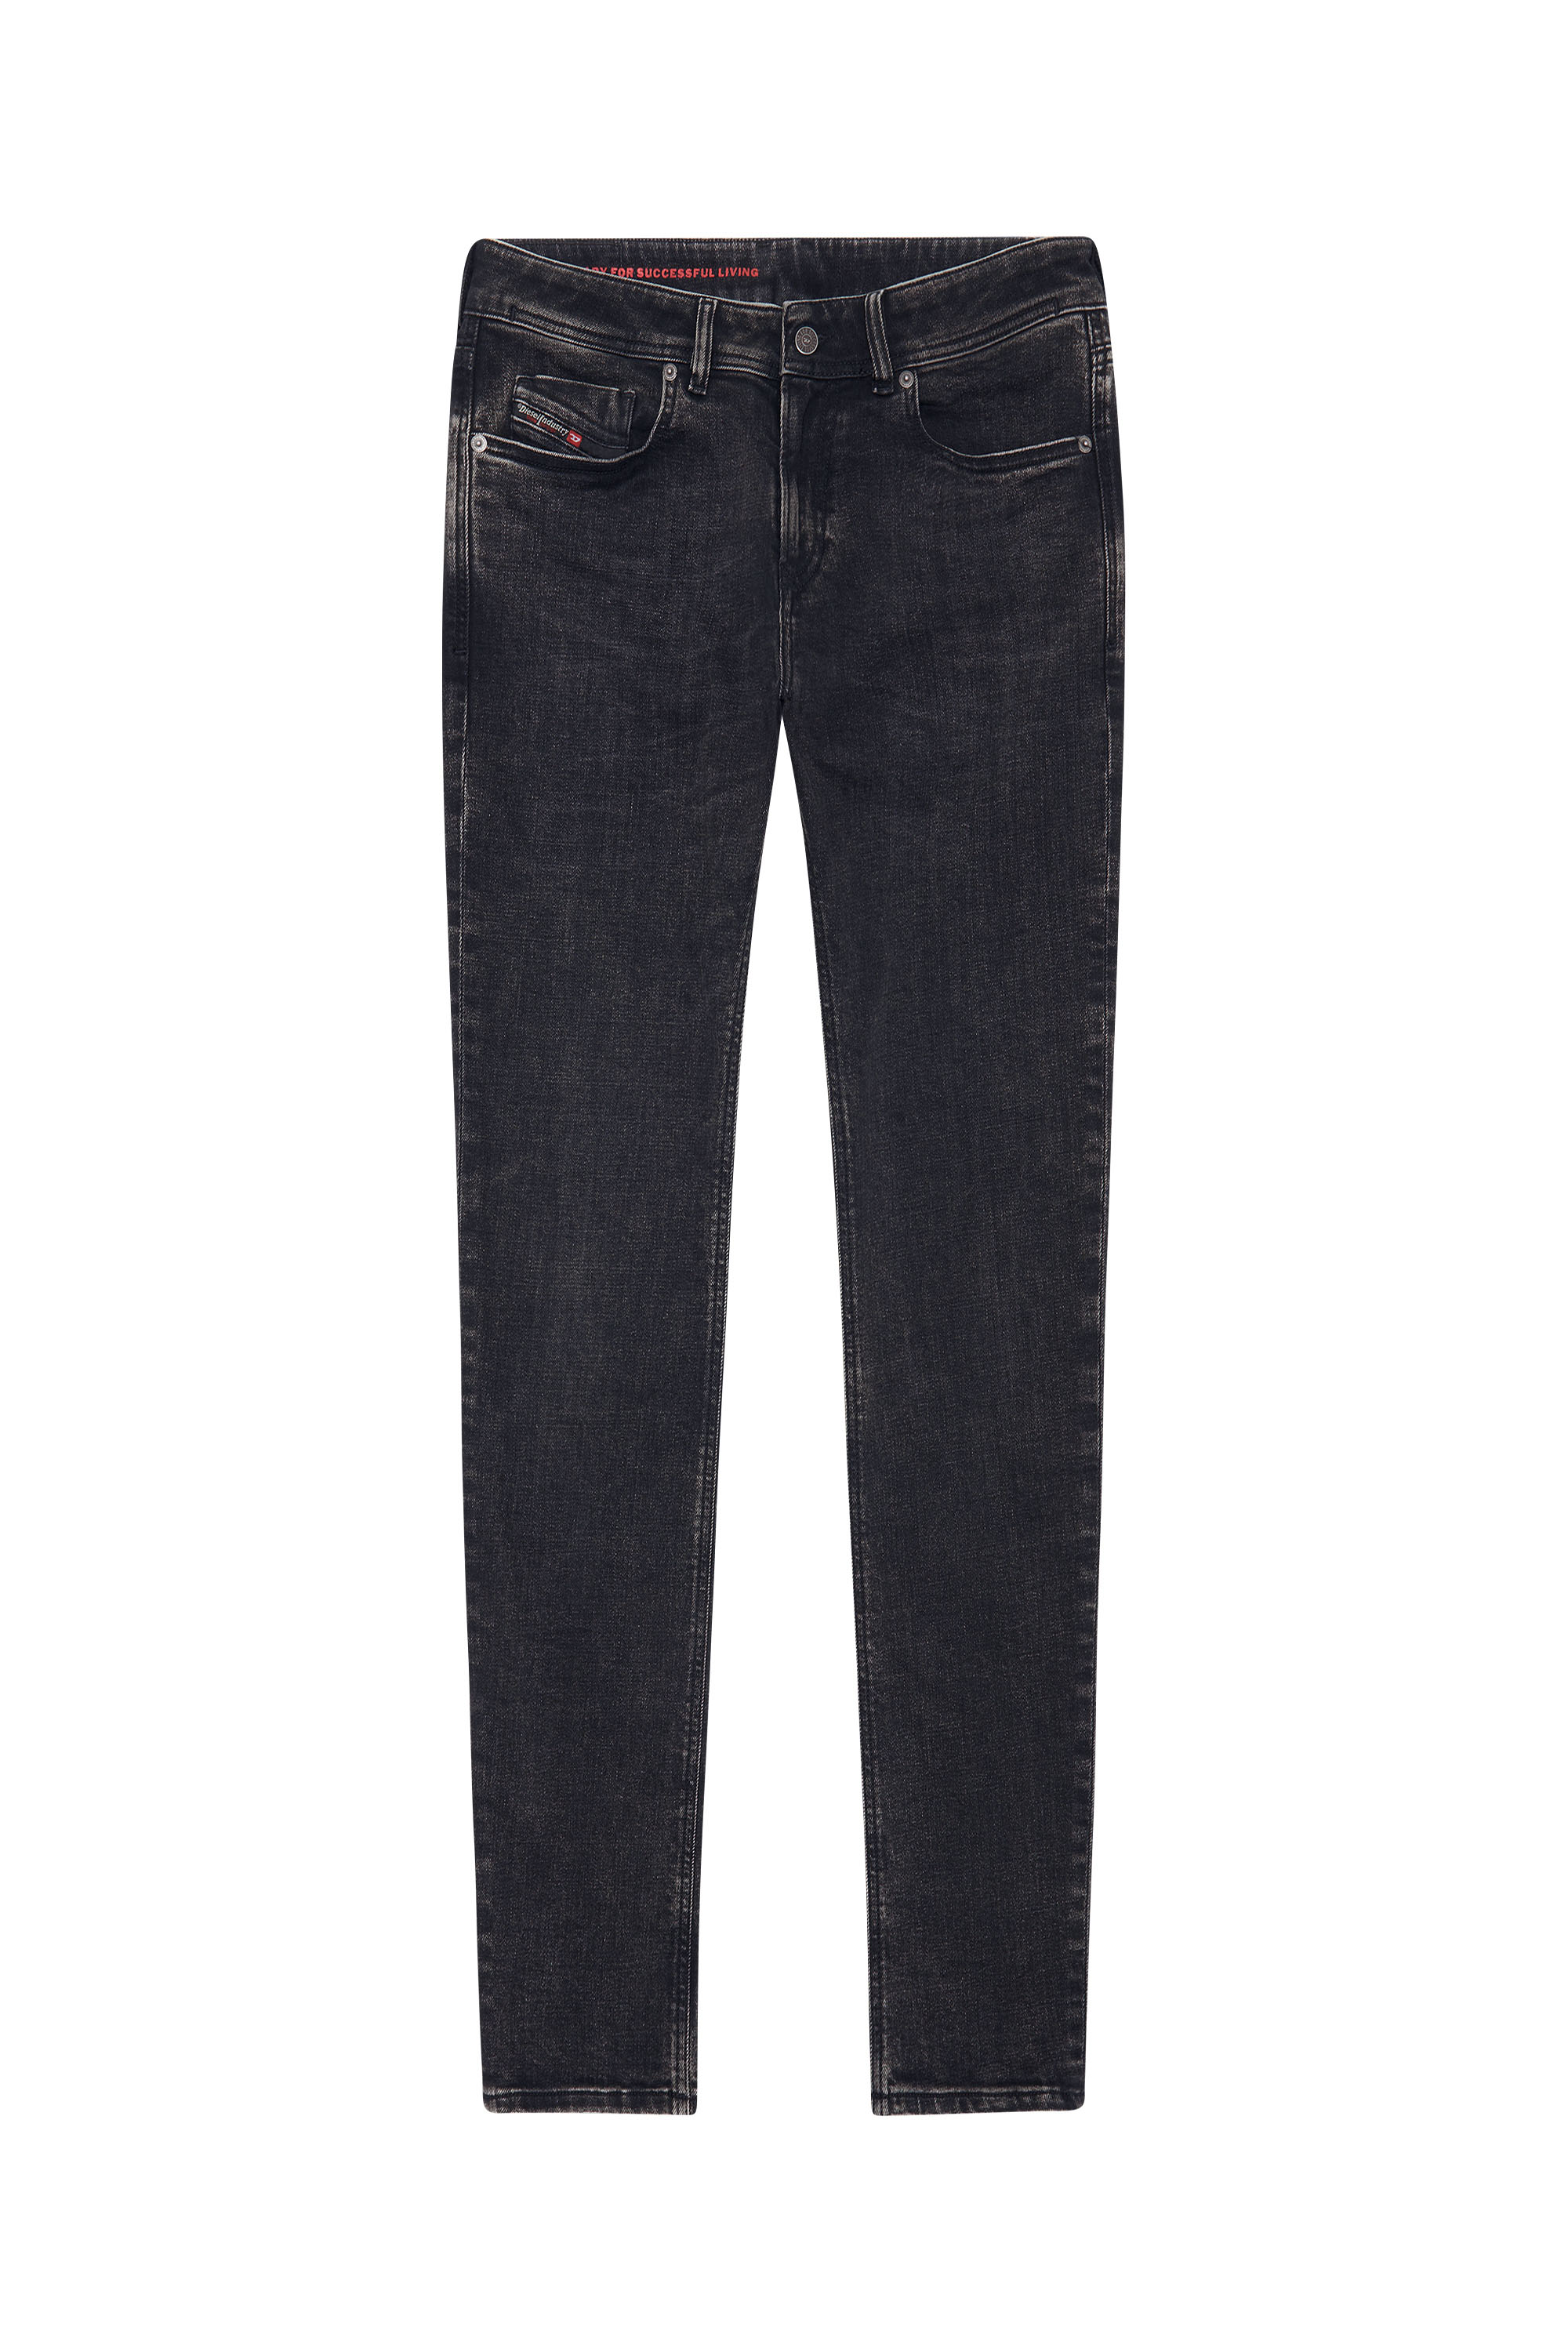 Diesel - Skinny Jeans 1979 Sleenker 09C23, Black/Dark grey - Image 6